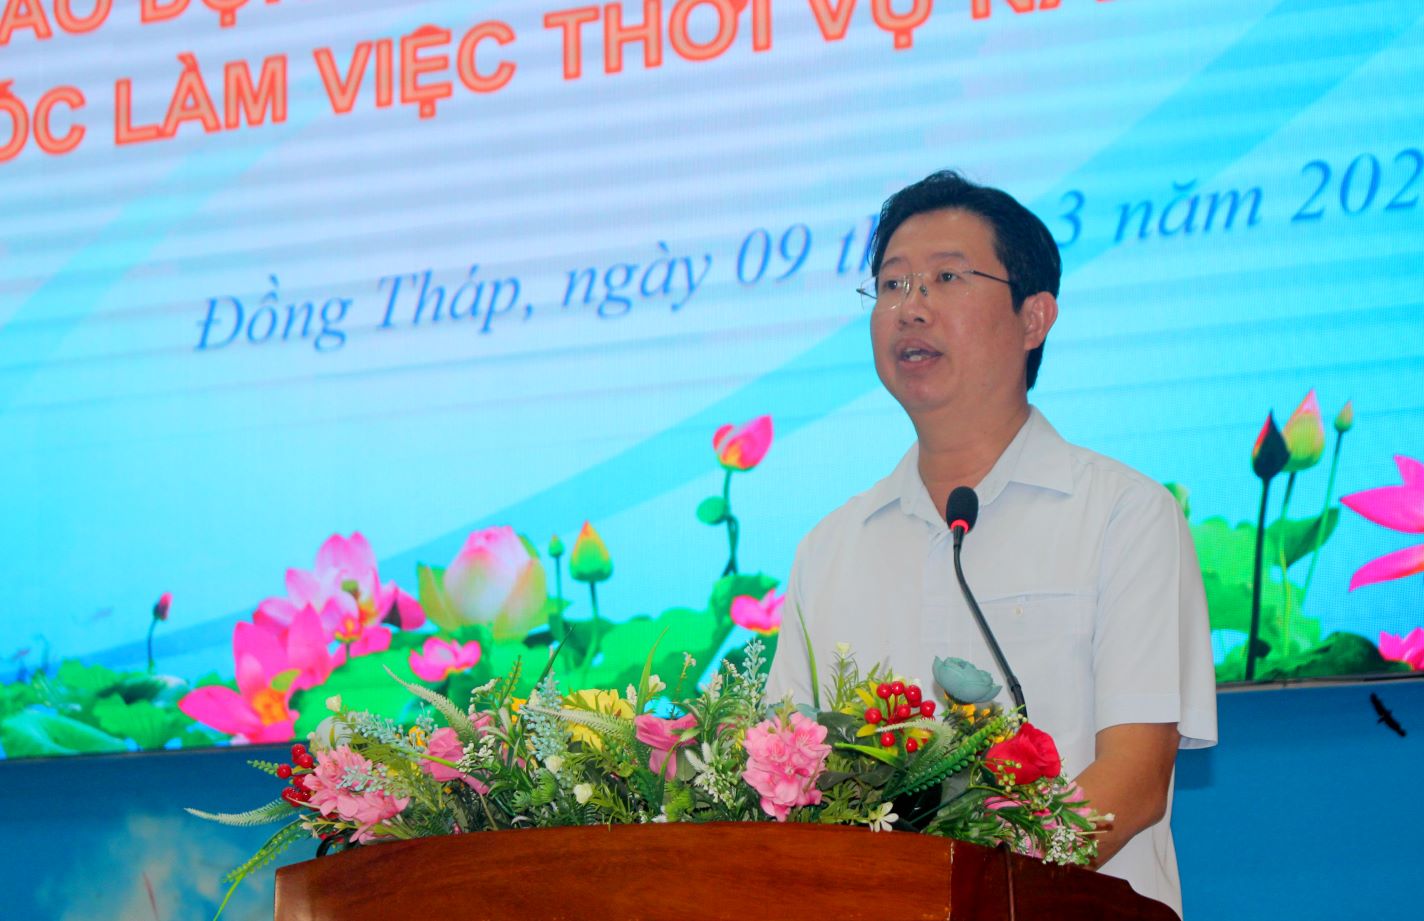 Ông Huỳnh Minh Tuấn - Thường vụ Tỉnh ủy, Phó Chủ tịch UBND tỉnh Đồng Tháp phát biểu tại buổi gặp gỡ. Ảnh: Lâm Điền